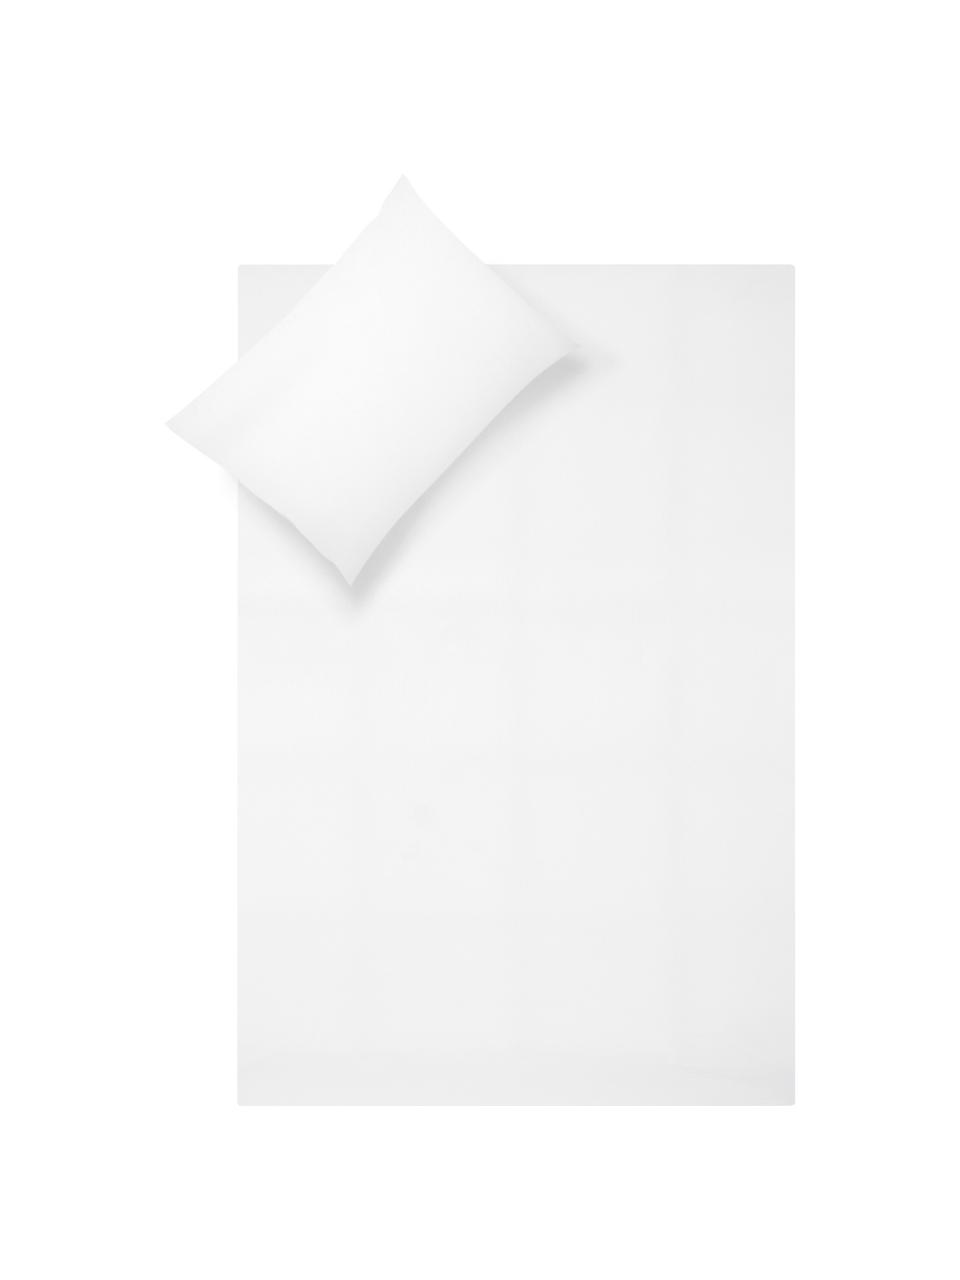 Parure copripiumino in percalle Elsie, Tessuto: percalle Densità del filo, Bianco, 255 x 200 cm + 2 federe 50 x 80 cm